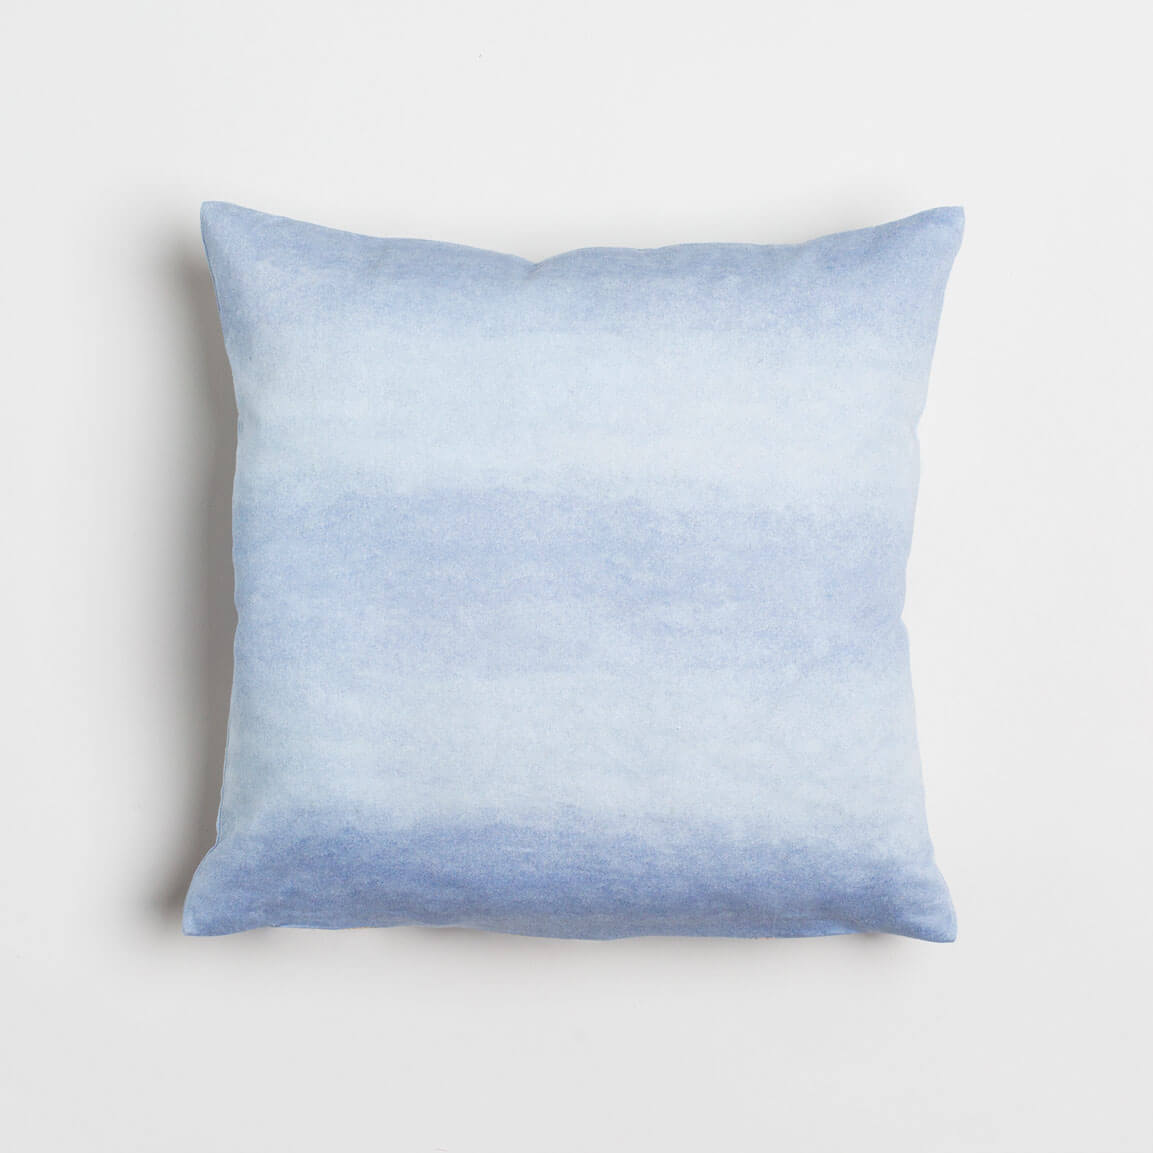 https://lindacabotdesign.com/wp-content/uploads/2018/10/Pillow-organic-cotton-artisan-handmade-farm-wool-watercolor-wash-light-blue-brass-zipper-12-inch.jpg